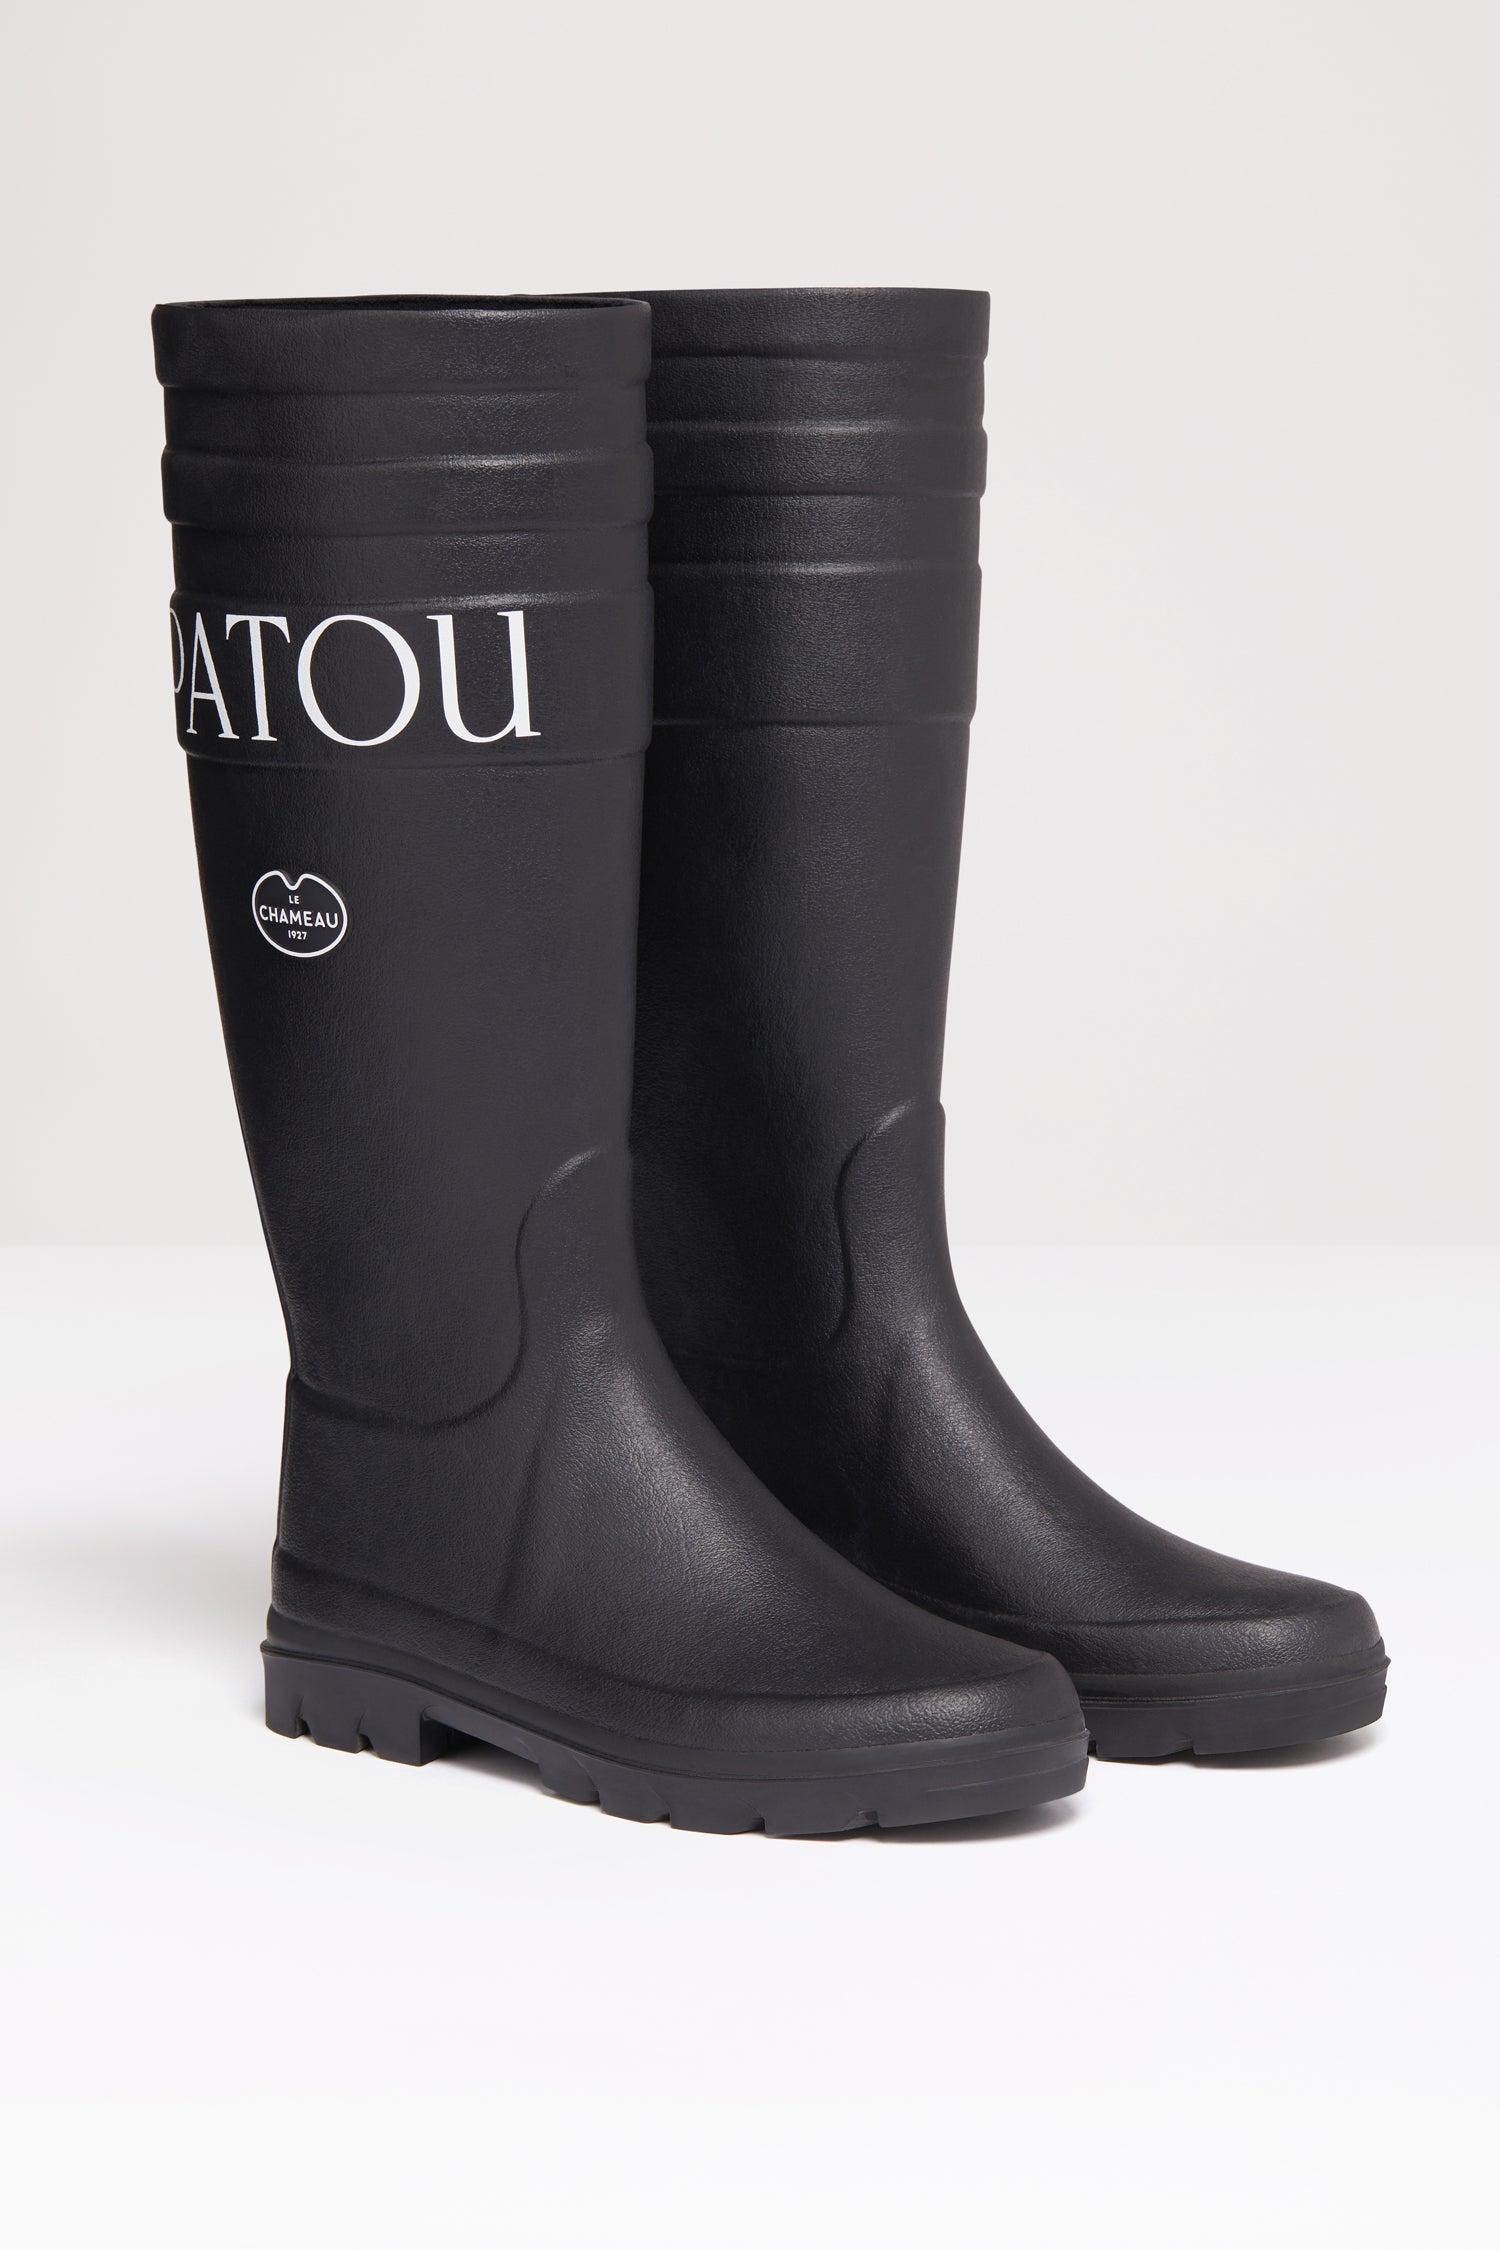 Patou X Le Chameau Rubber Boots in Black | Lyst